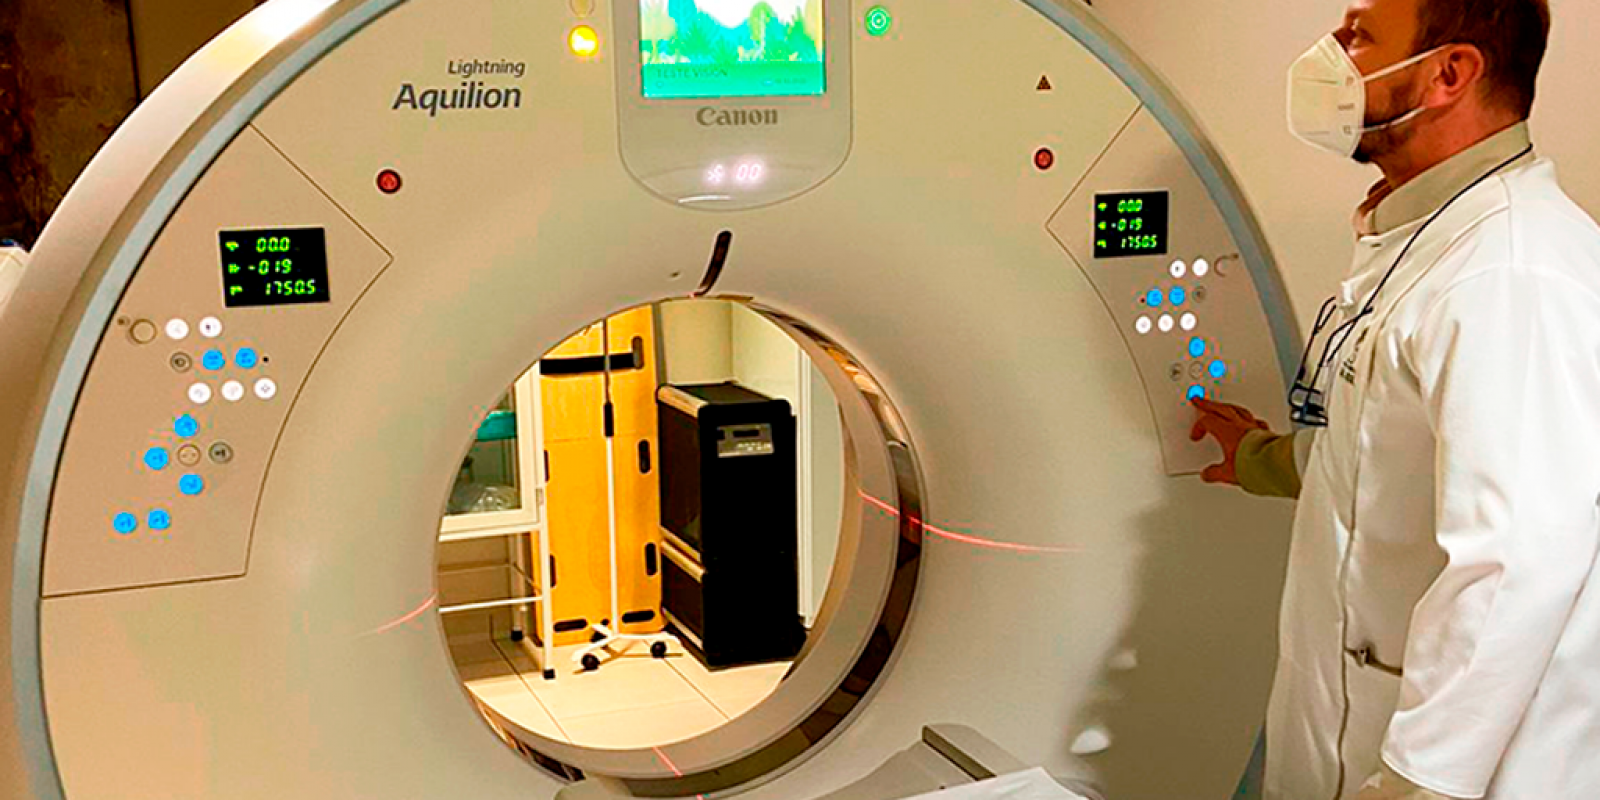 Tomografia Computadorizada: exame de imagem é ferramenta valiosa no diagnóstico avançado